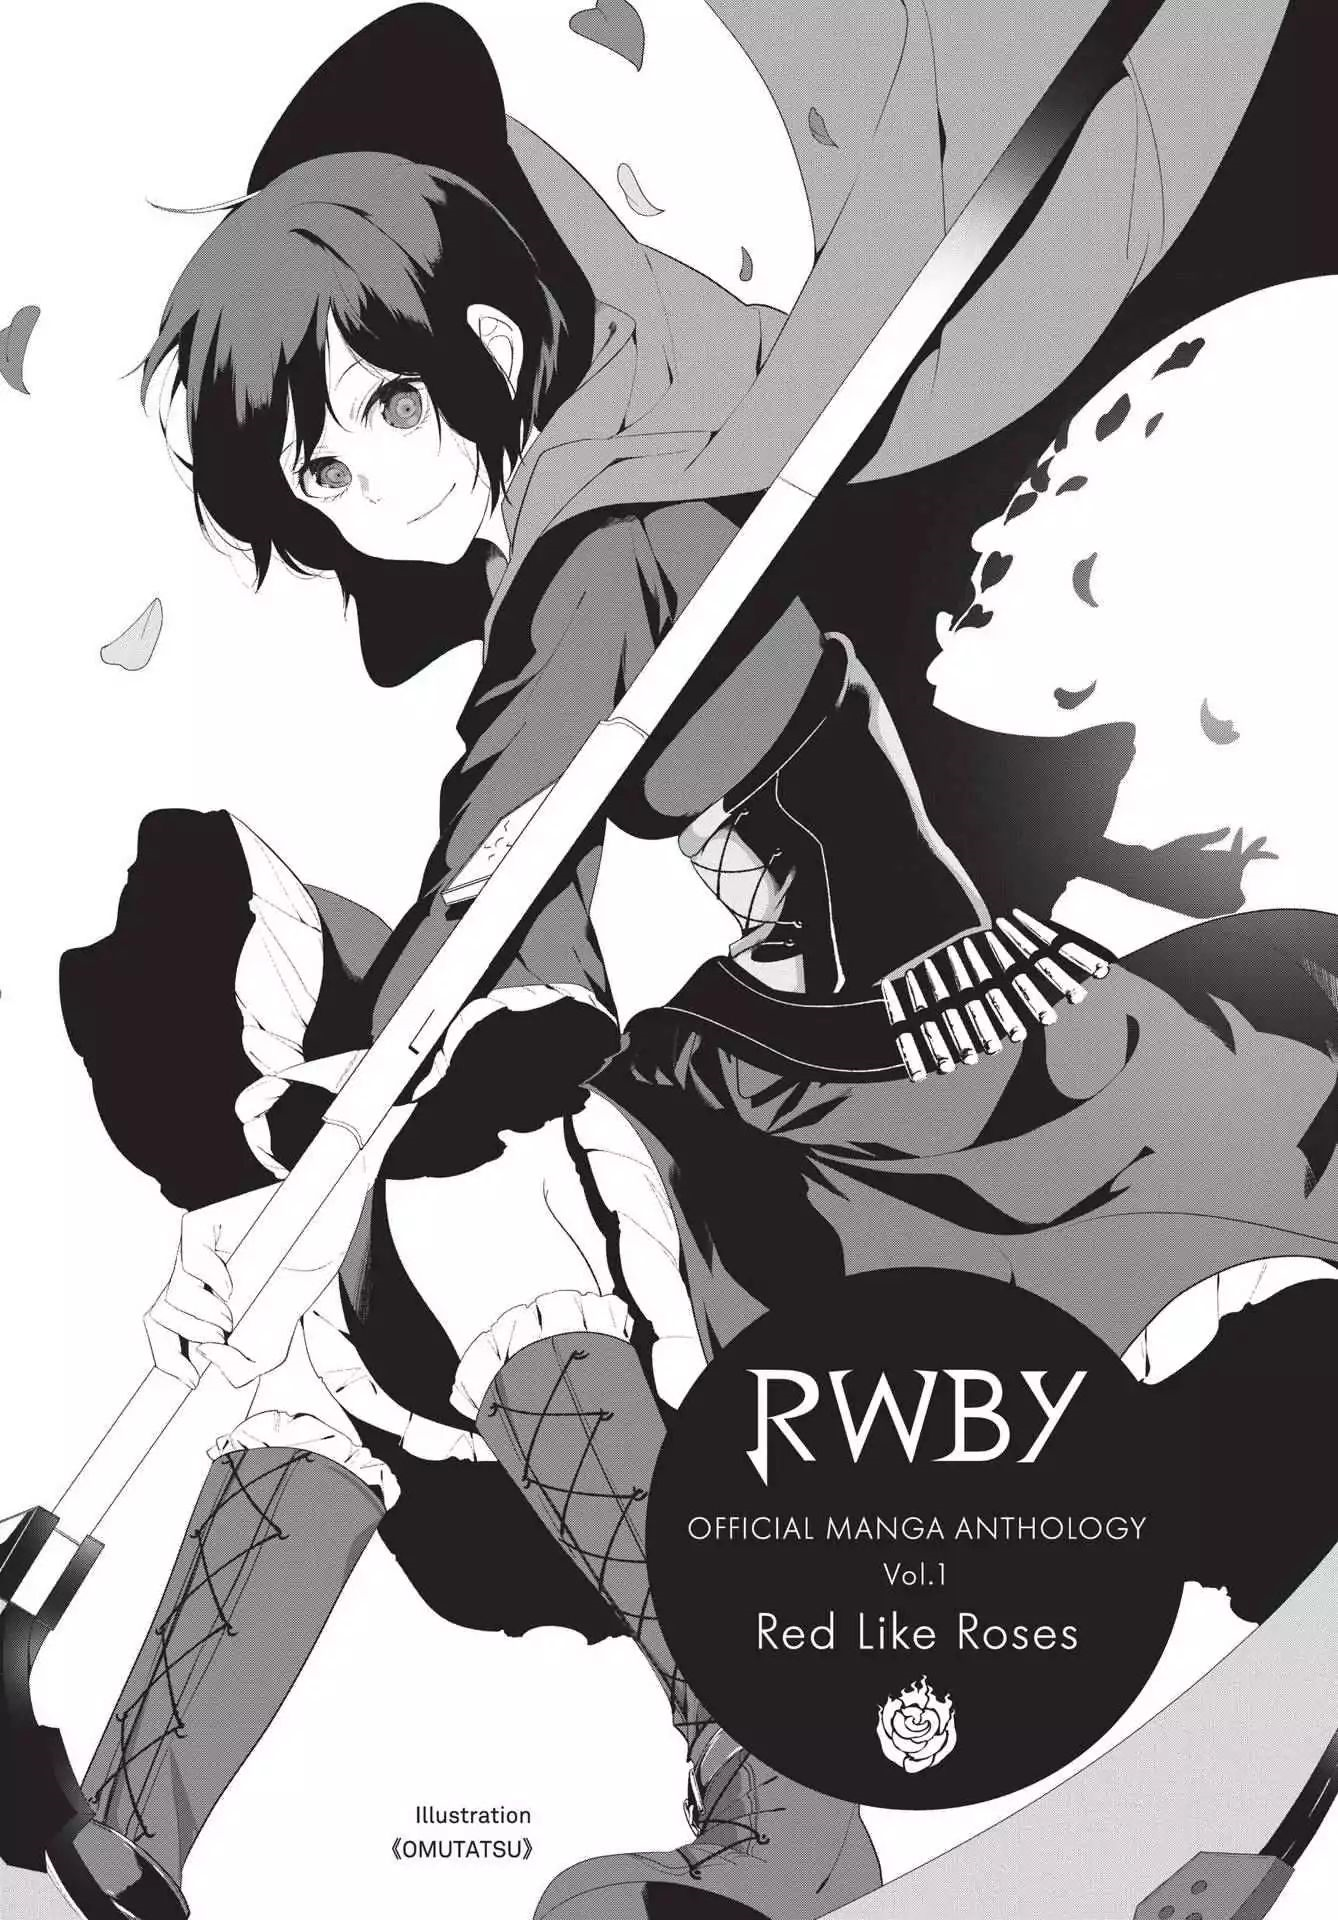 RWBY Manga Anthology 5 Vol. Маленькая европейская антология Манга. Антология манги